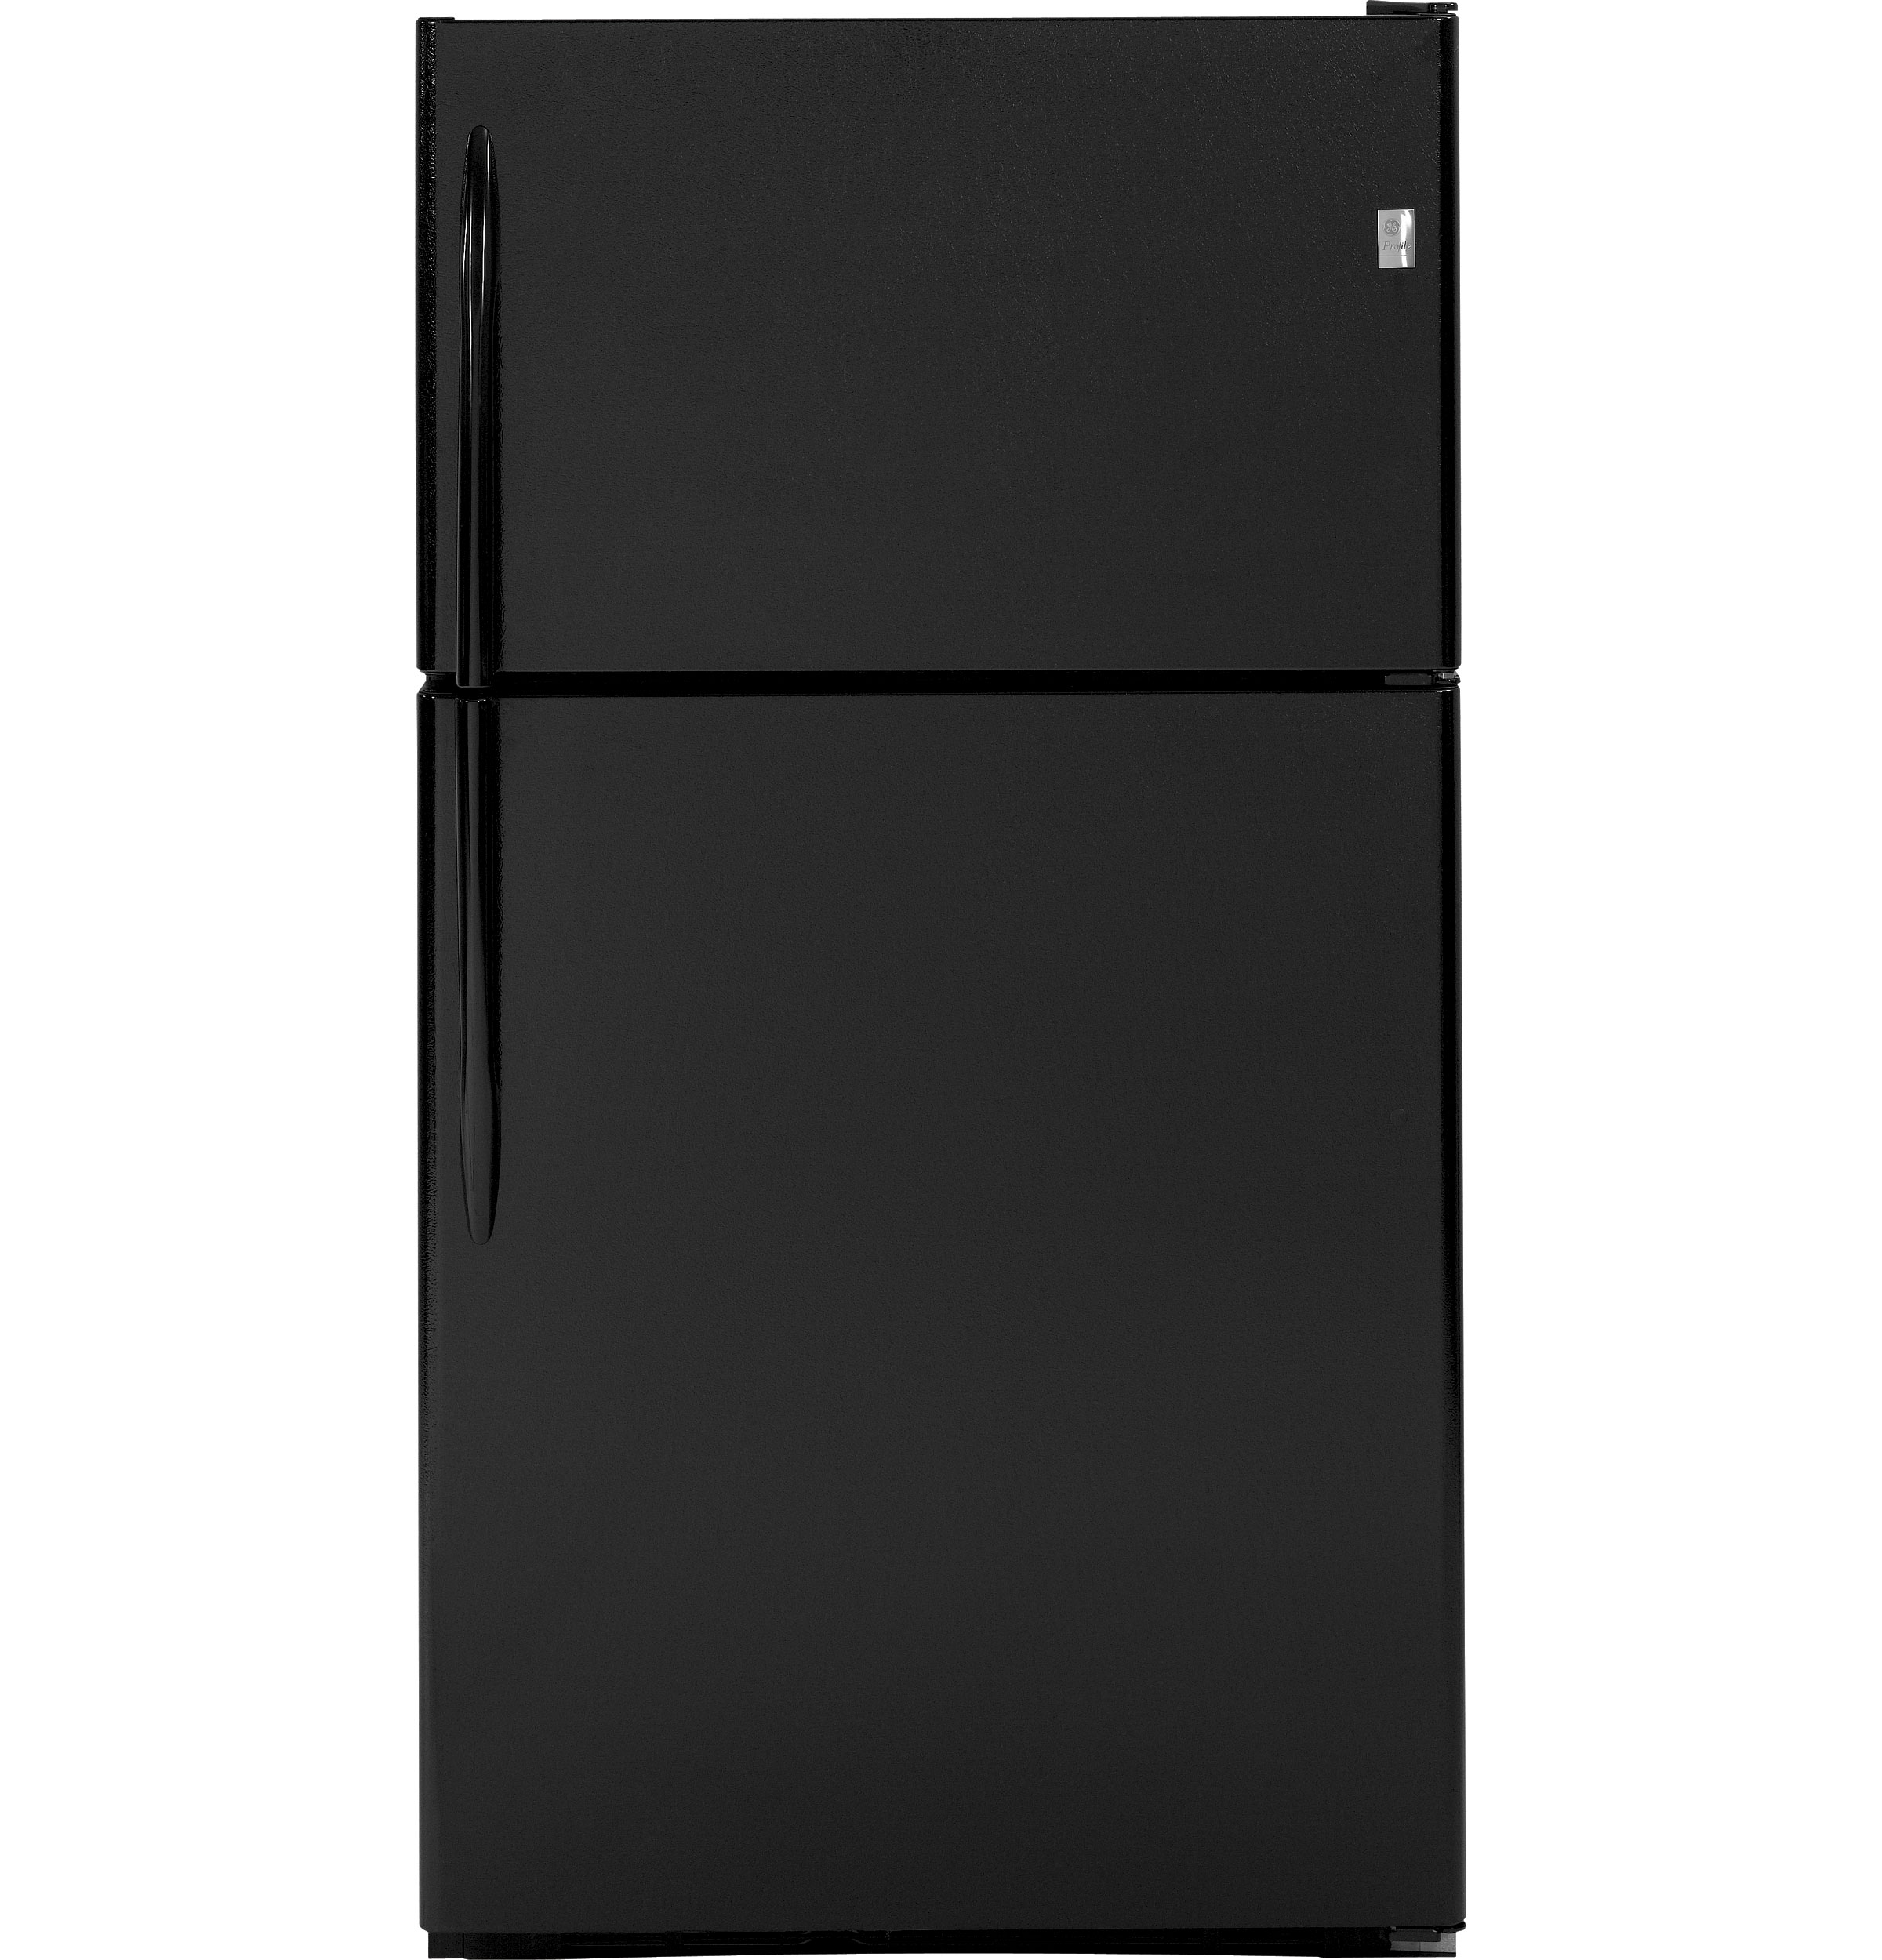 GE Profile™ Series 24.6 Cu. Ft. Top-Freezer Refrigerator